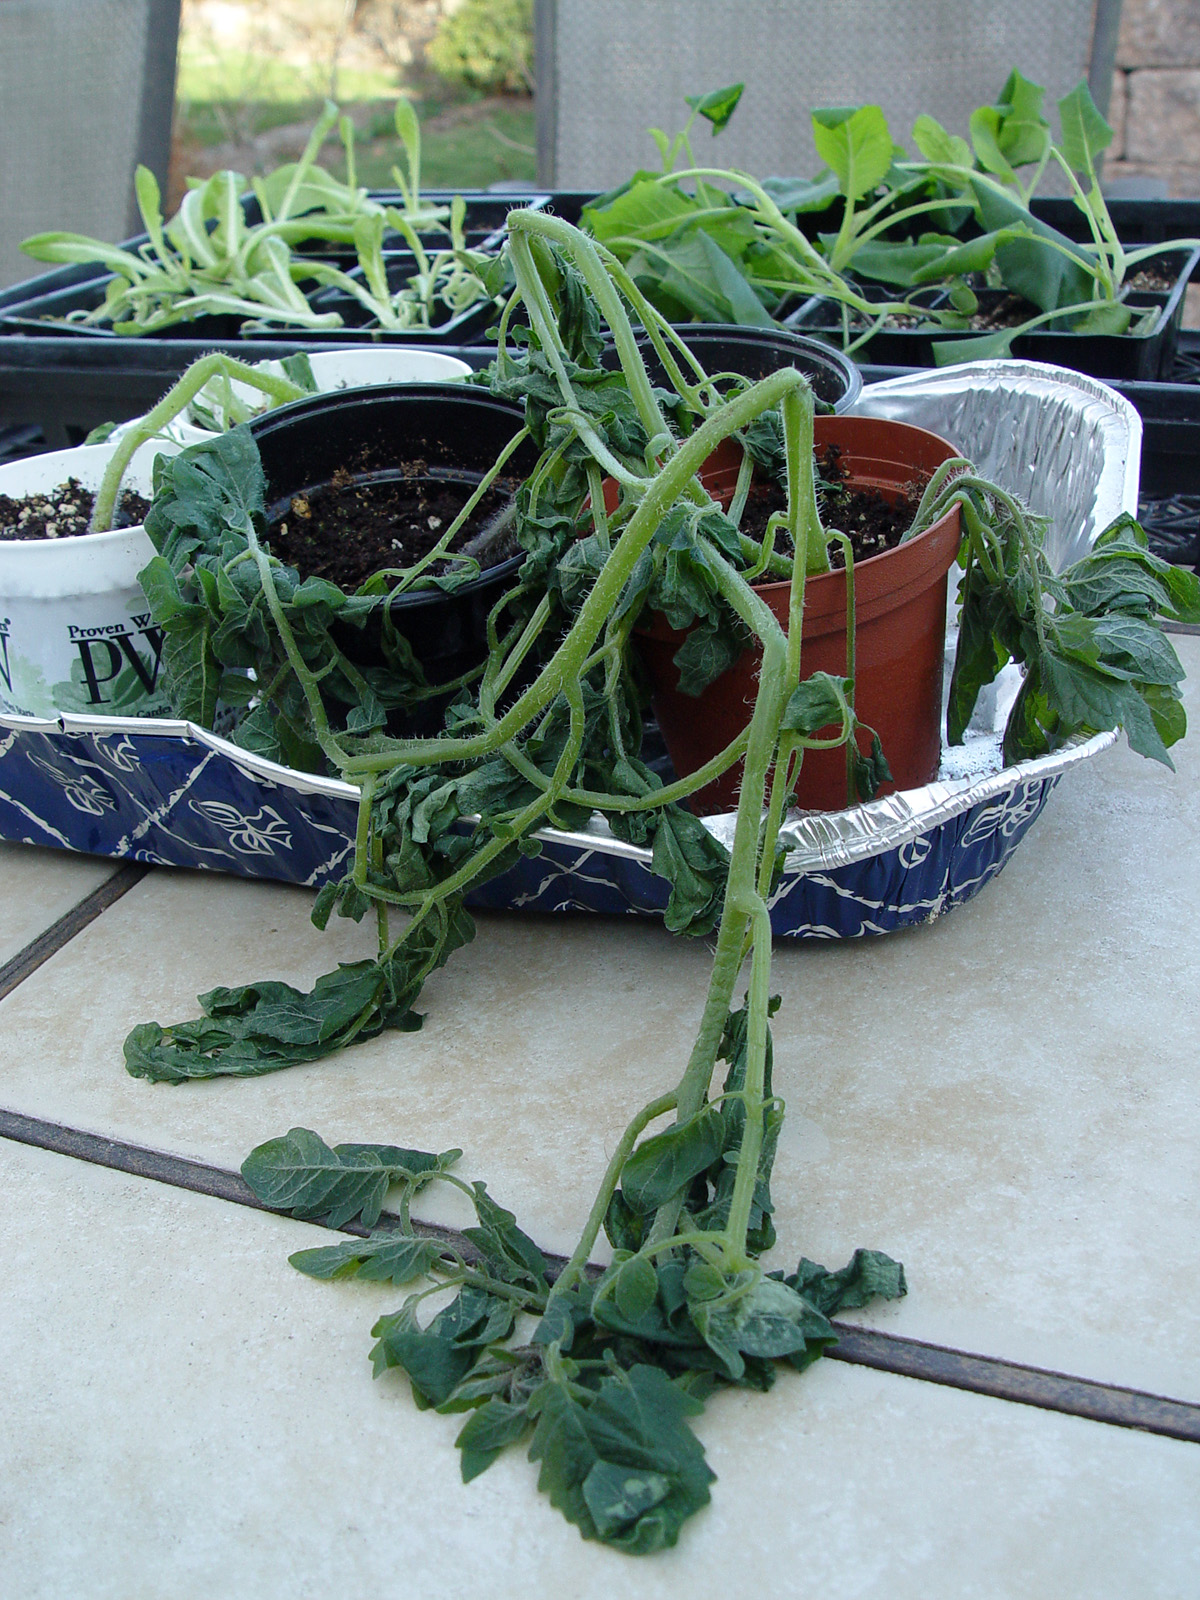 tomato.seedlings.frozen.jpg (1200×1600)